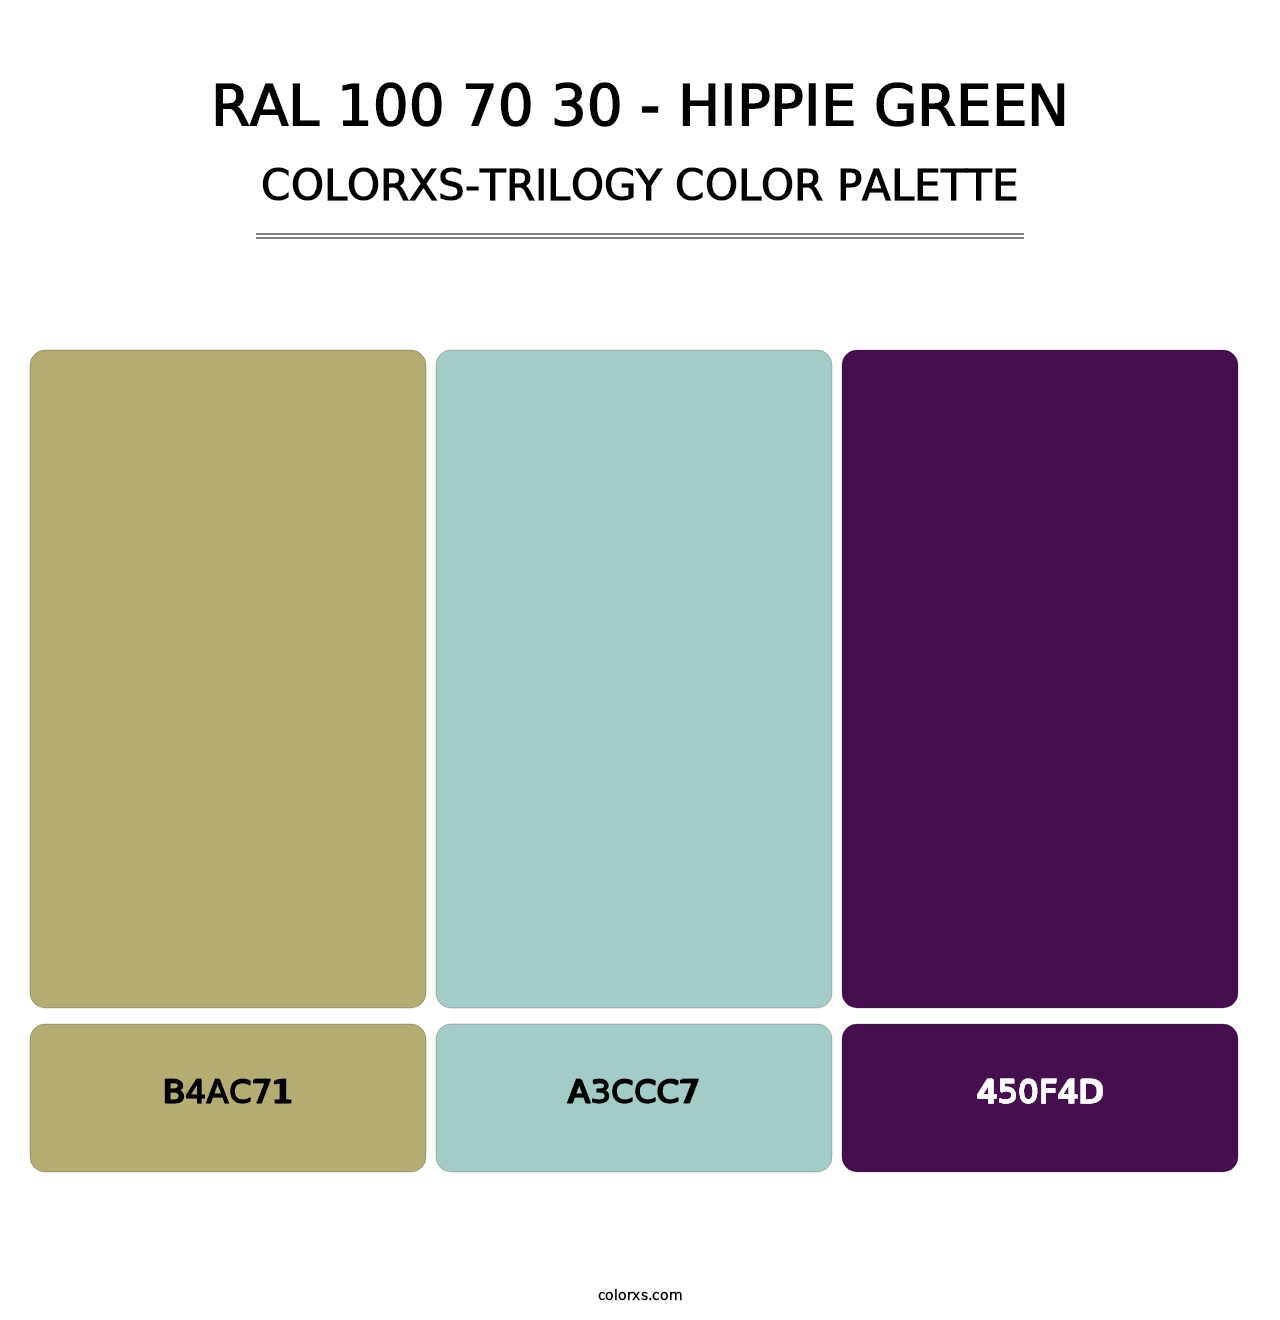 RAL 100 70 30 - Hippie Green - Colorxs Trilogy Palette